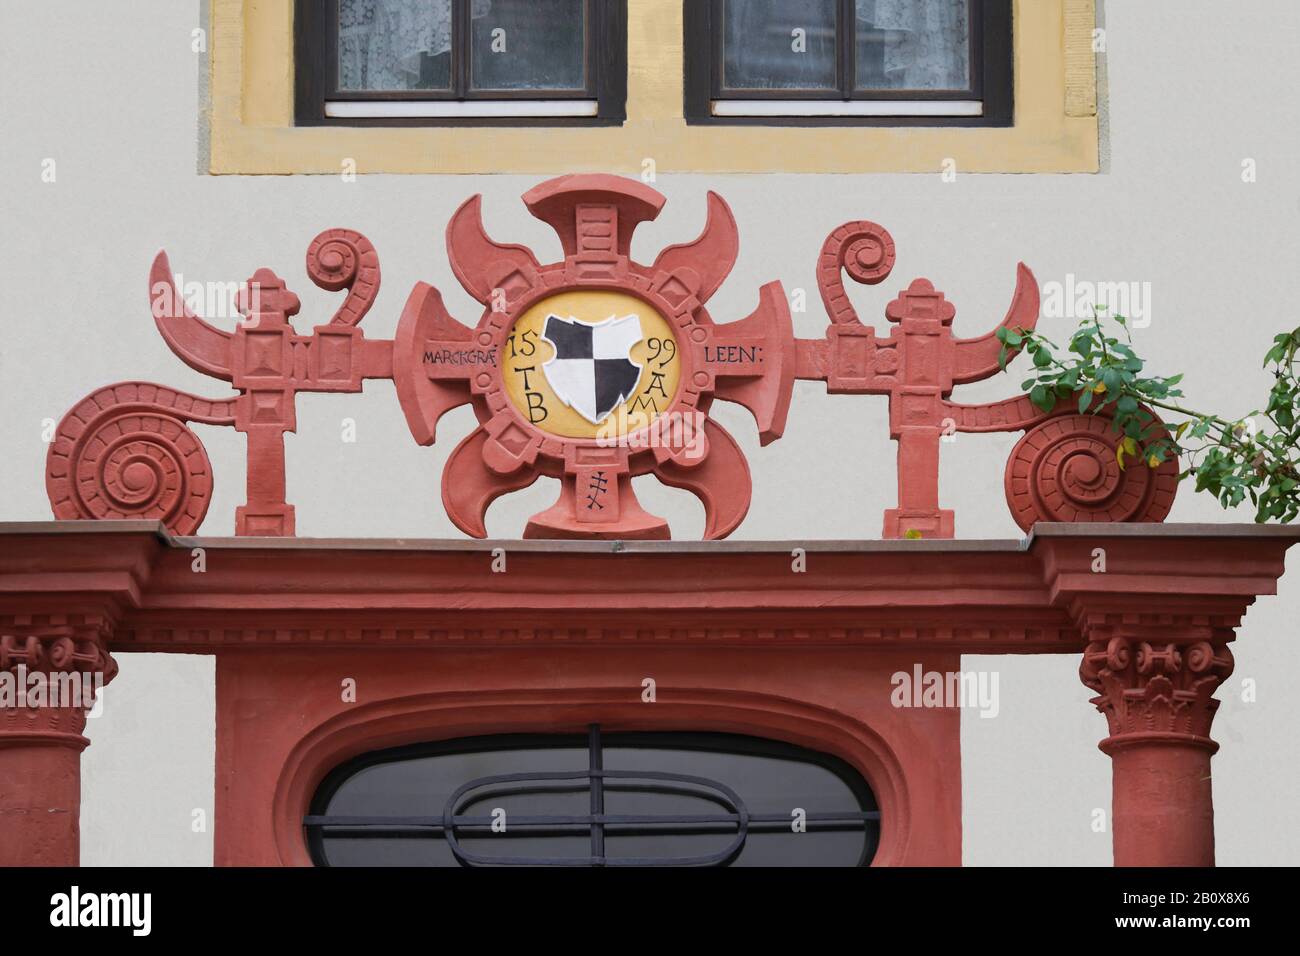 Stadtbild Historisches Haus in Prichsenstadt 2019 Stock Photo